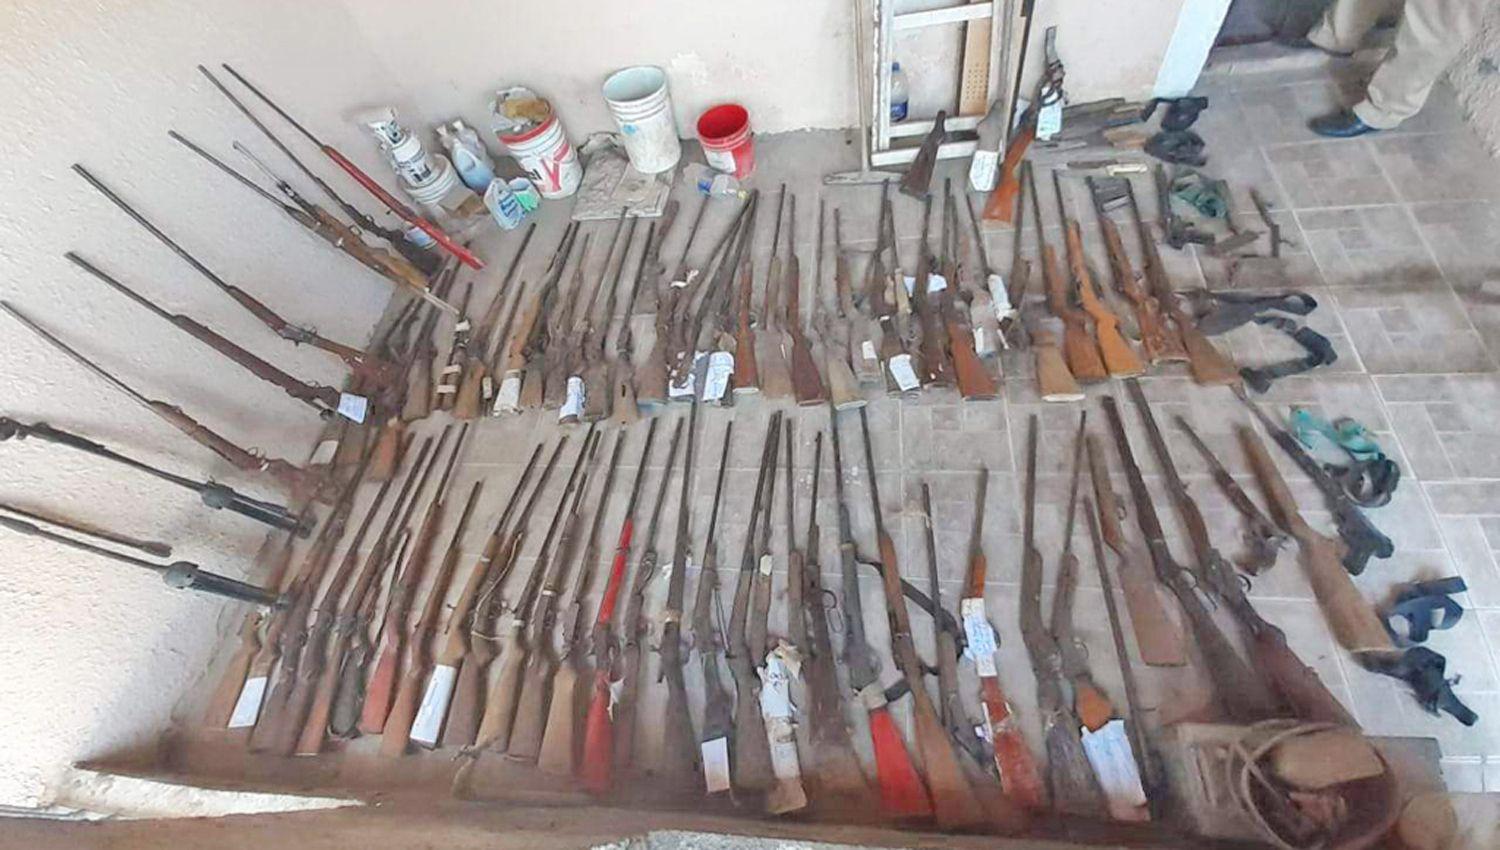 SECUESTROS En la casa de la familia Rodríguez hallaron m�s de 150 armas de fuego
